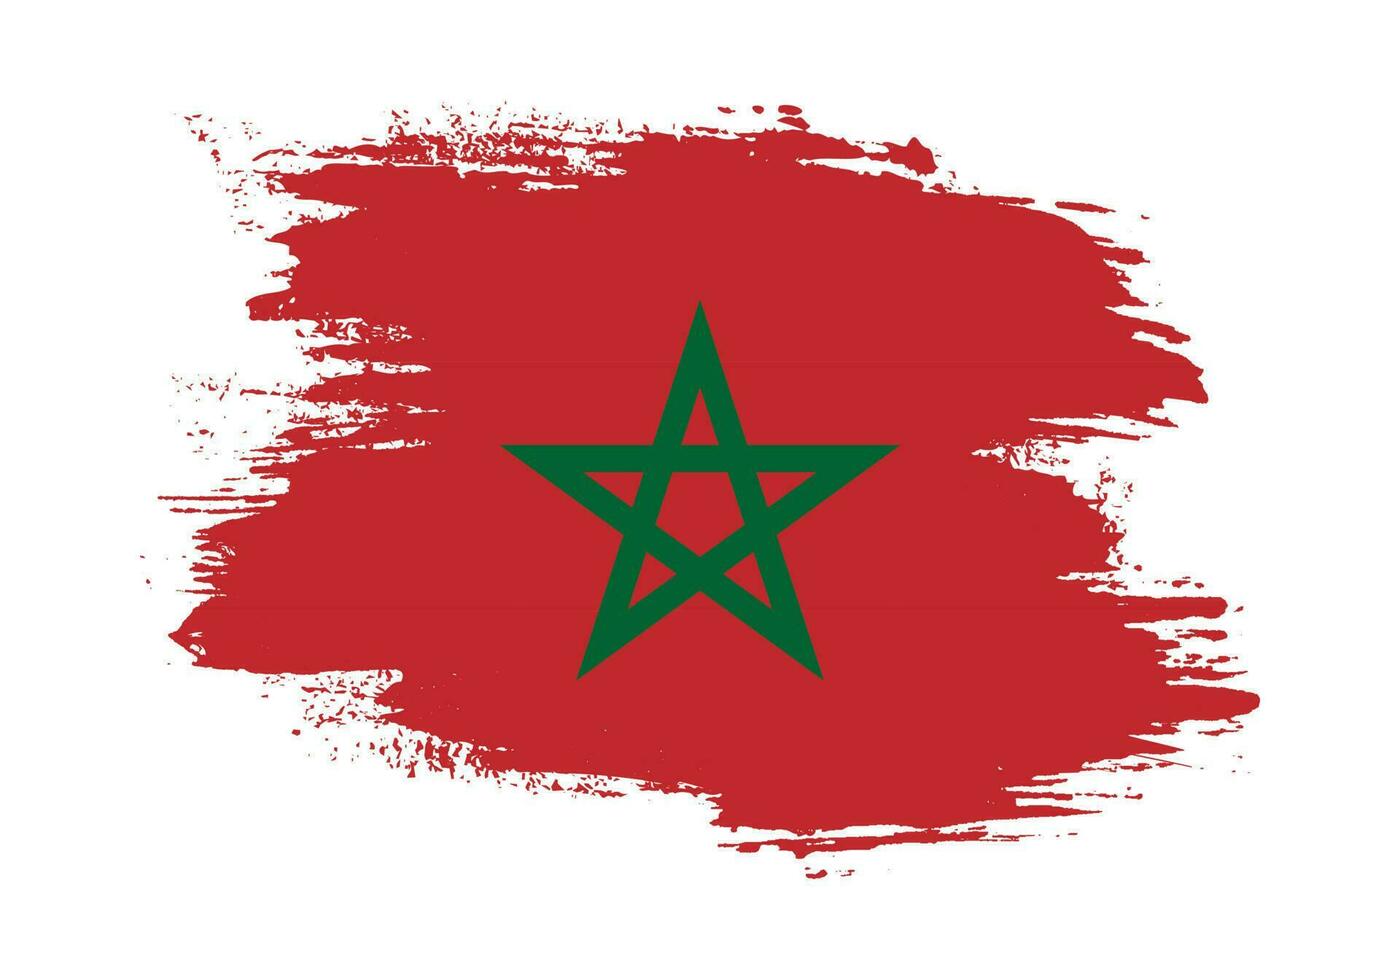 pintura pincelada textura grunge vetor de bandeira de Marrocos